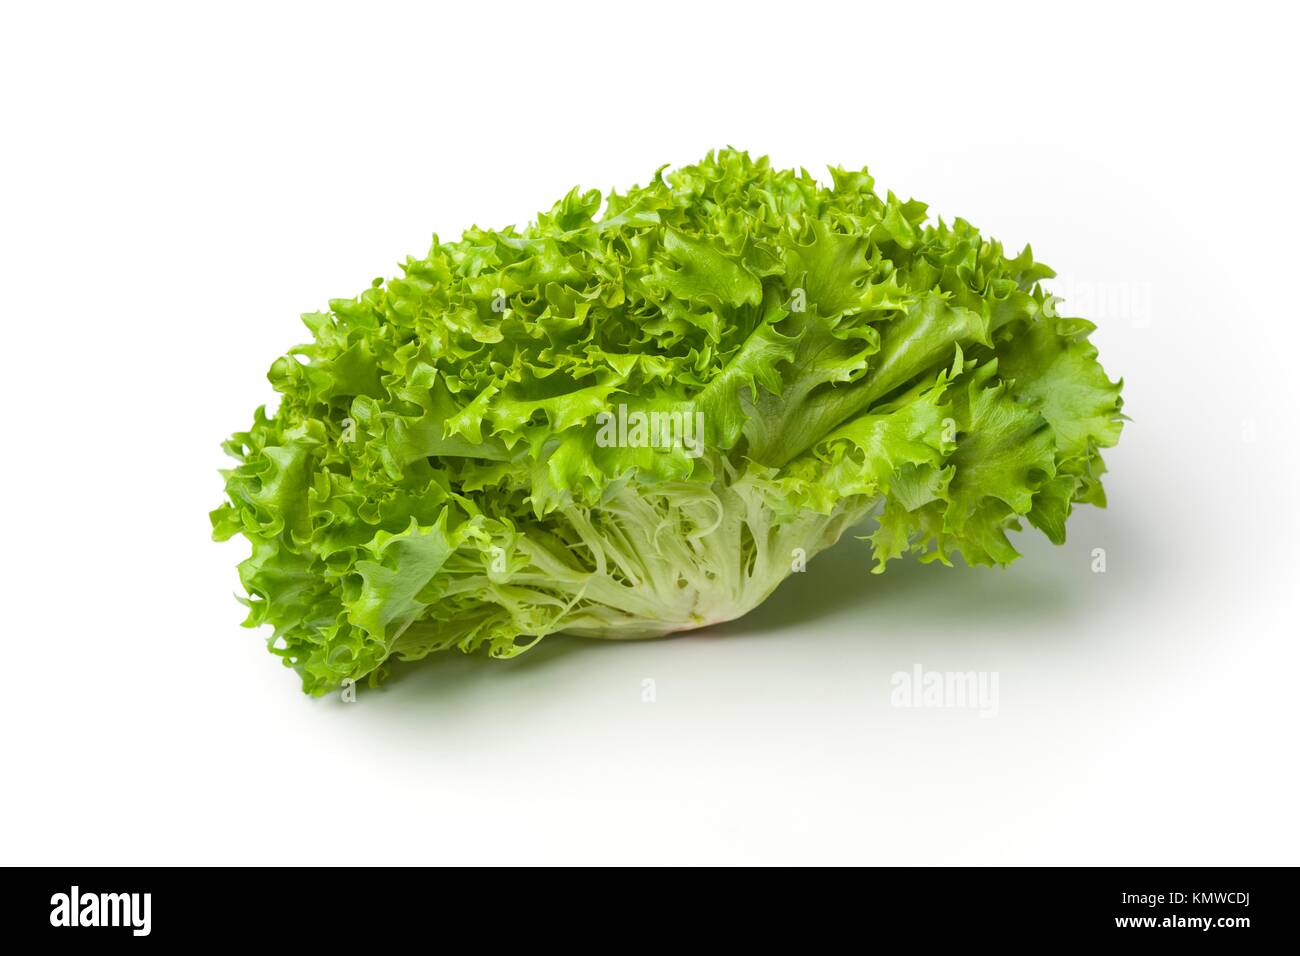 Fresh Lollo bionda lettuce isolated on white background Stock Photo - Alamy